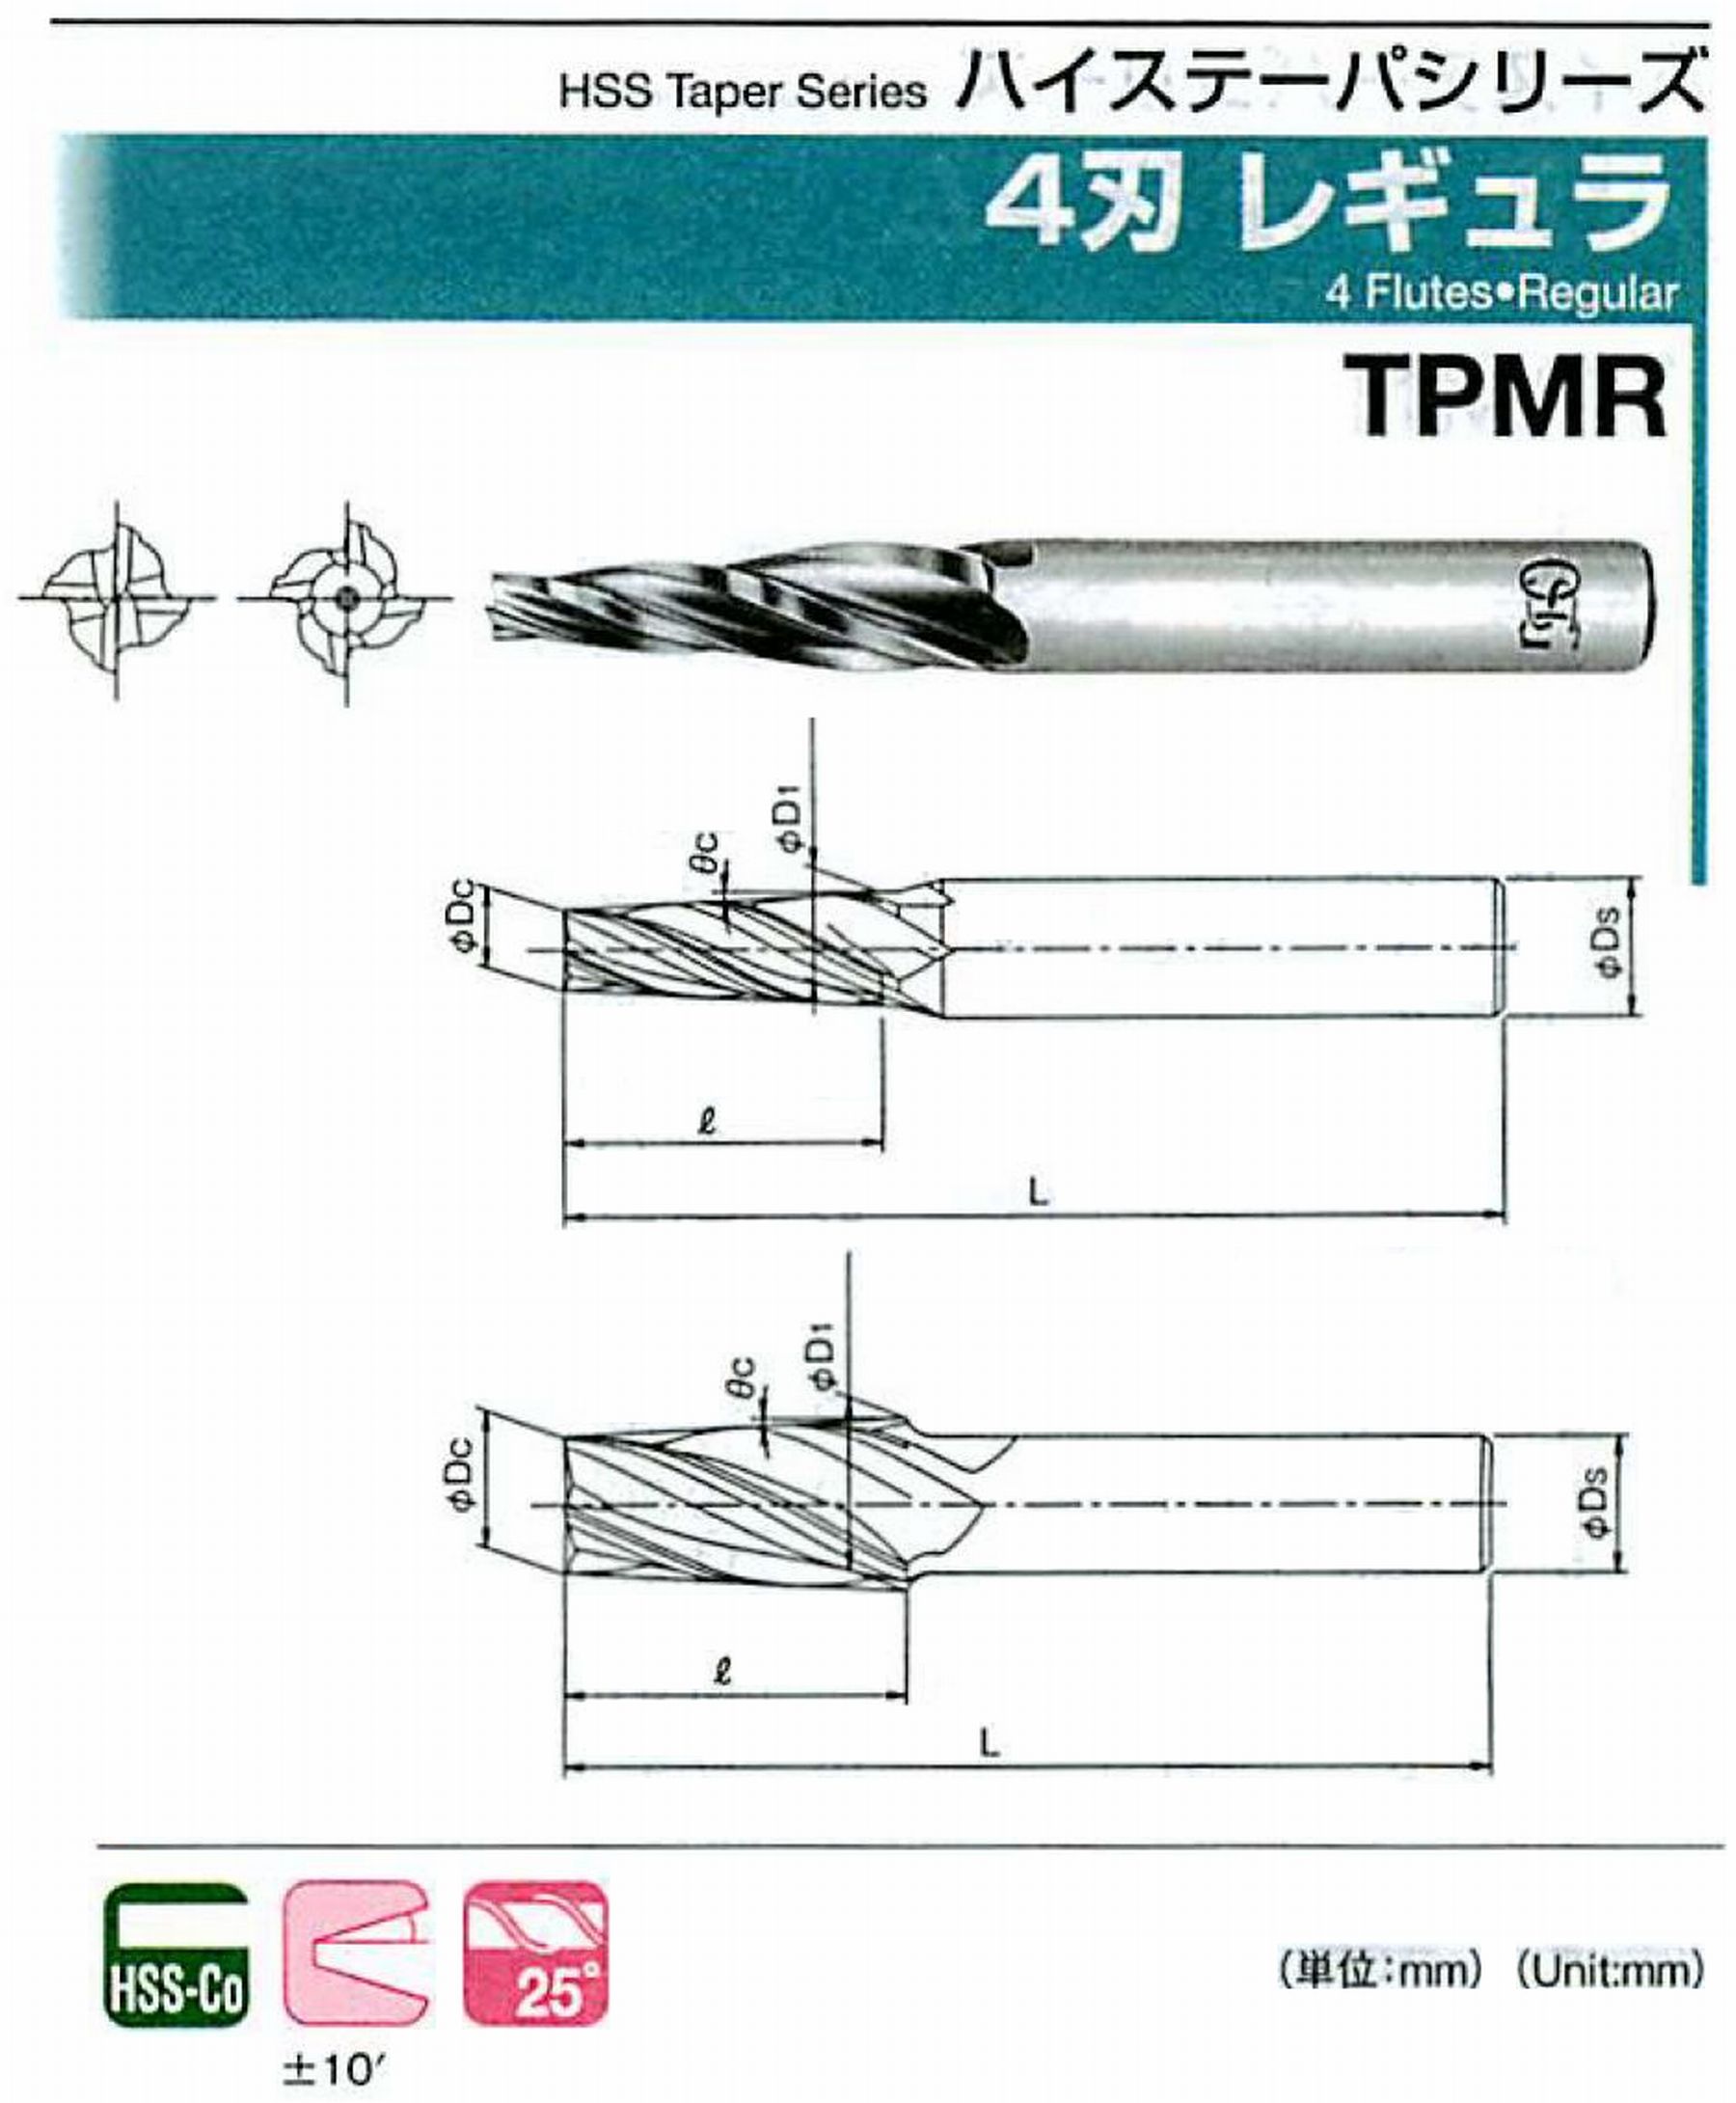 4刃 レギュラ TPMR(用途:被削材:炭素鋼、合金鋼、工具鋼、プリハードン鋼、ステンレス鋼、鋳鉄、ダクタイル鋳鉄、銅合金、アルミ合金